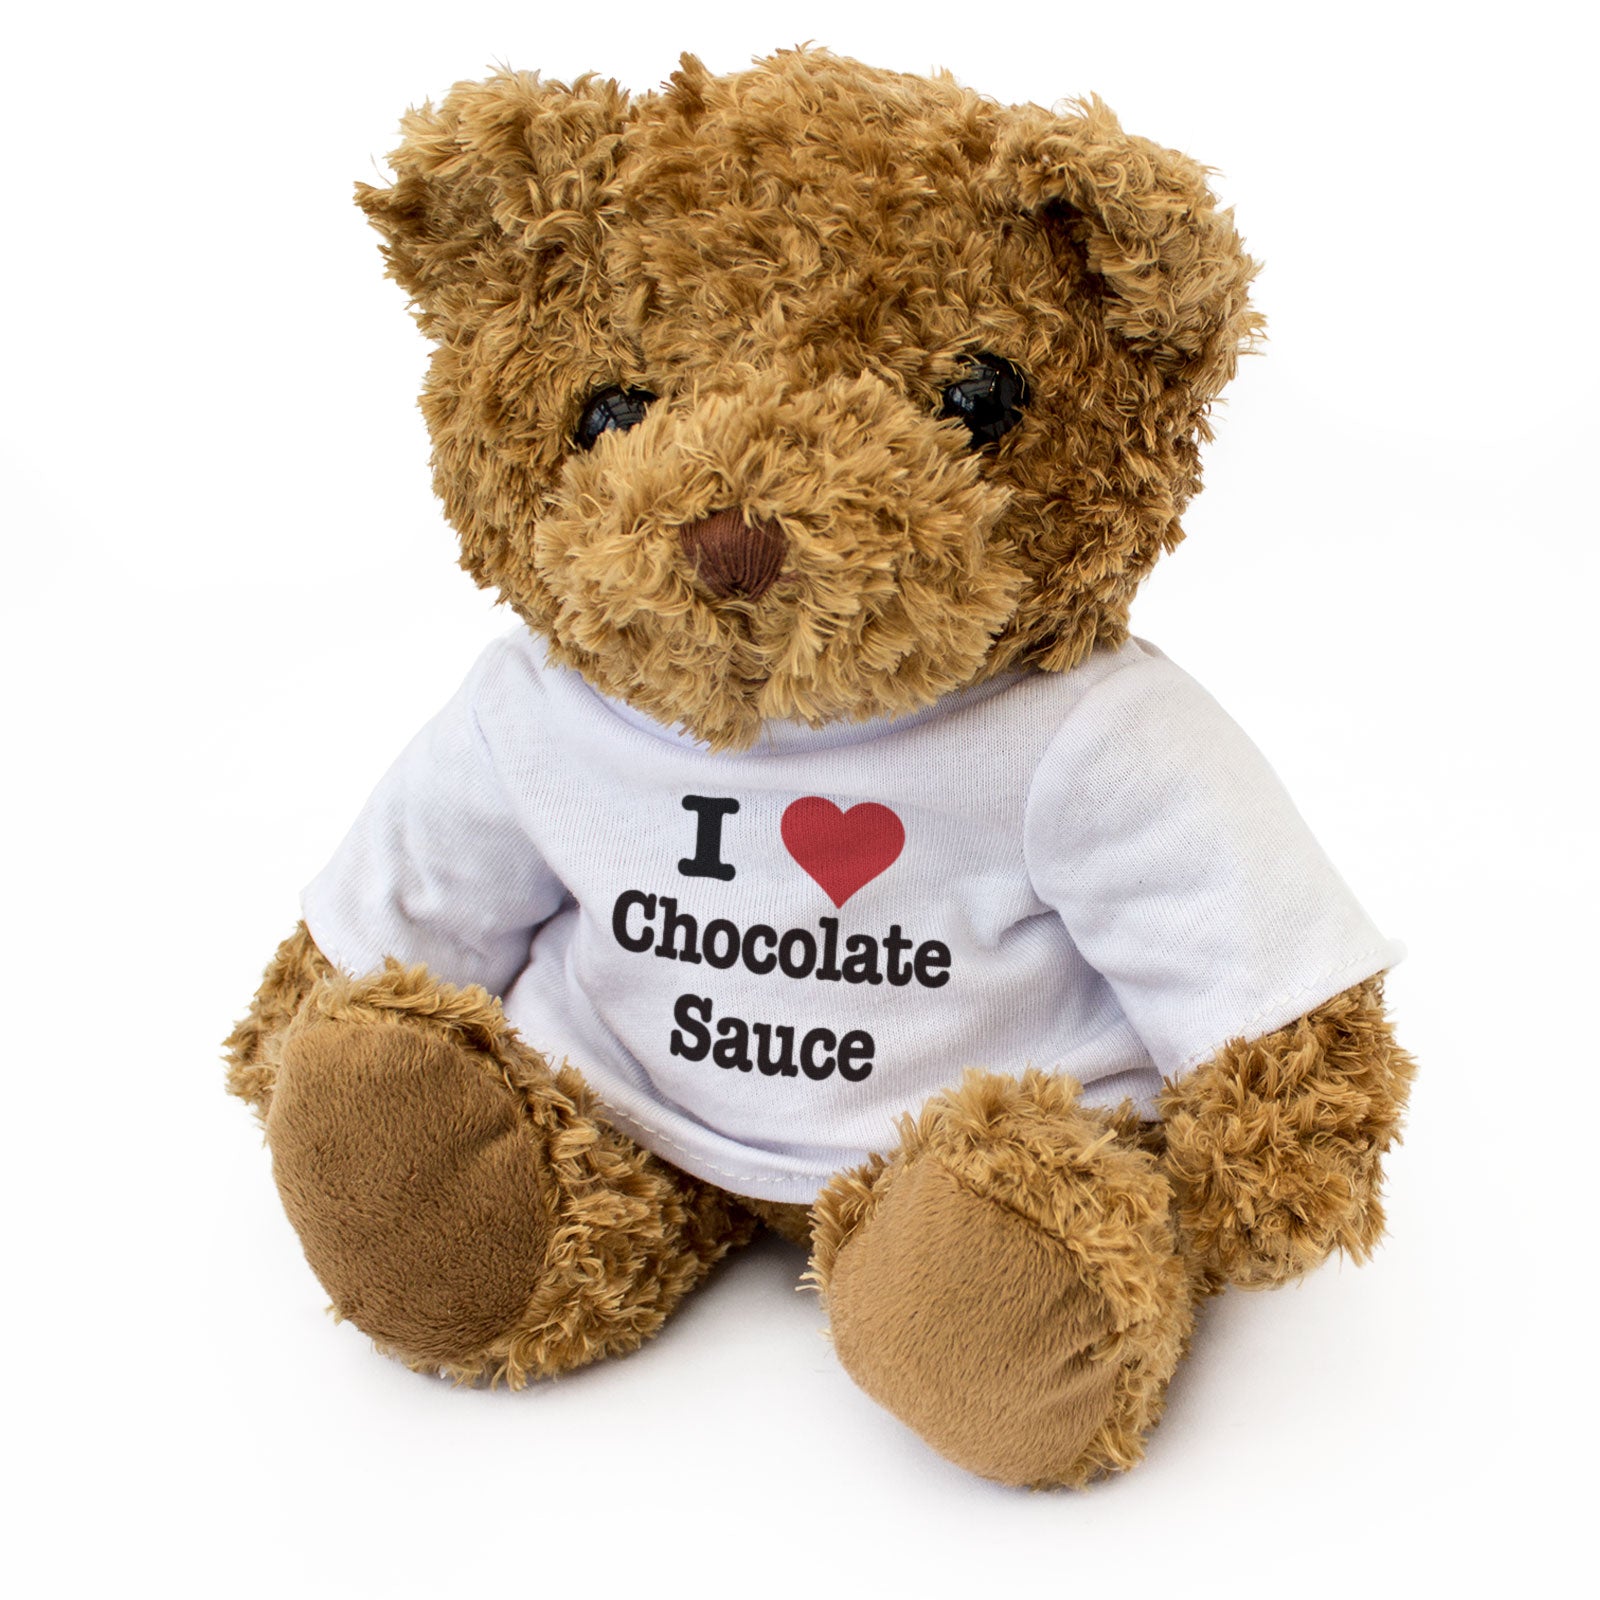 I Love Chocolate Sauce - Teddy Bear